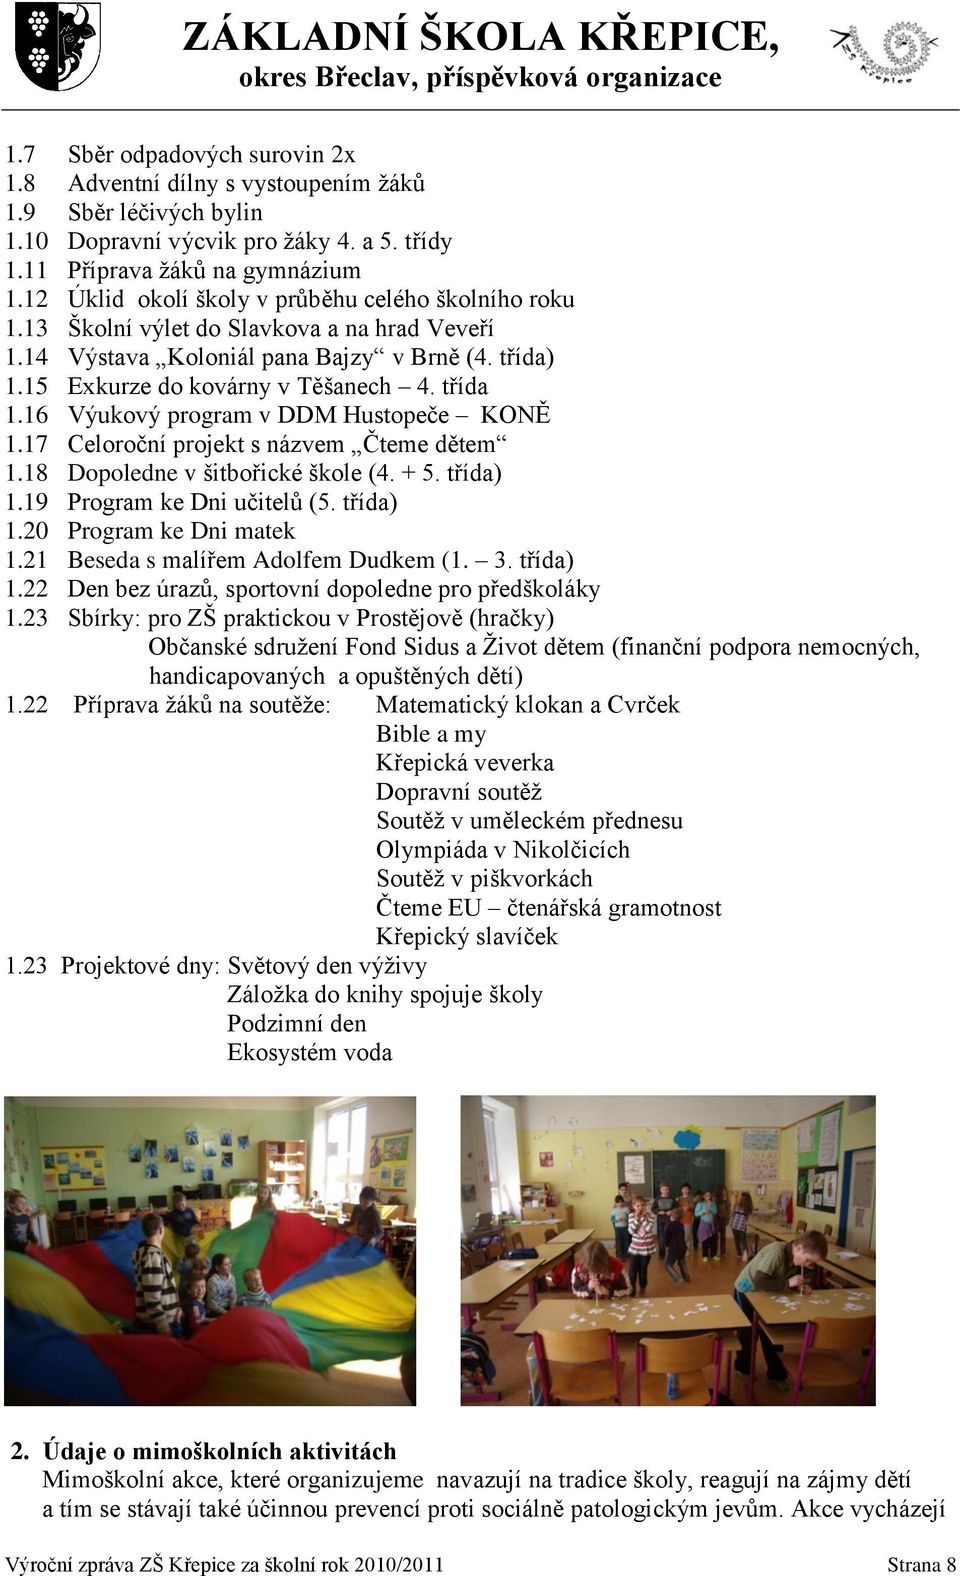 16 Výukový program v DDM Hustopeče KONĚ 1.17 Celoroční projekt s názvem Čteme dětem 1.18 Dopoledne v šitbořické škole (4. + 5. třída) 1.19 Program ke Dni učitelů (5. třída) 1.20 Program ke Dni matek 1.